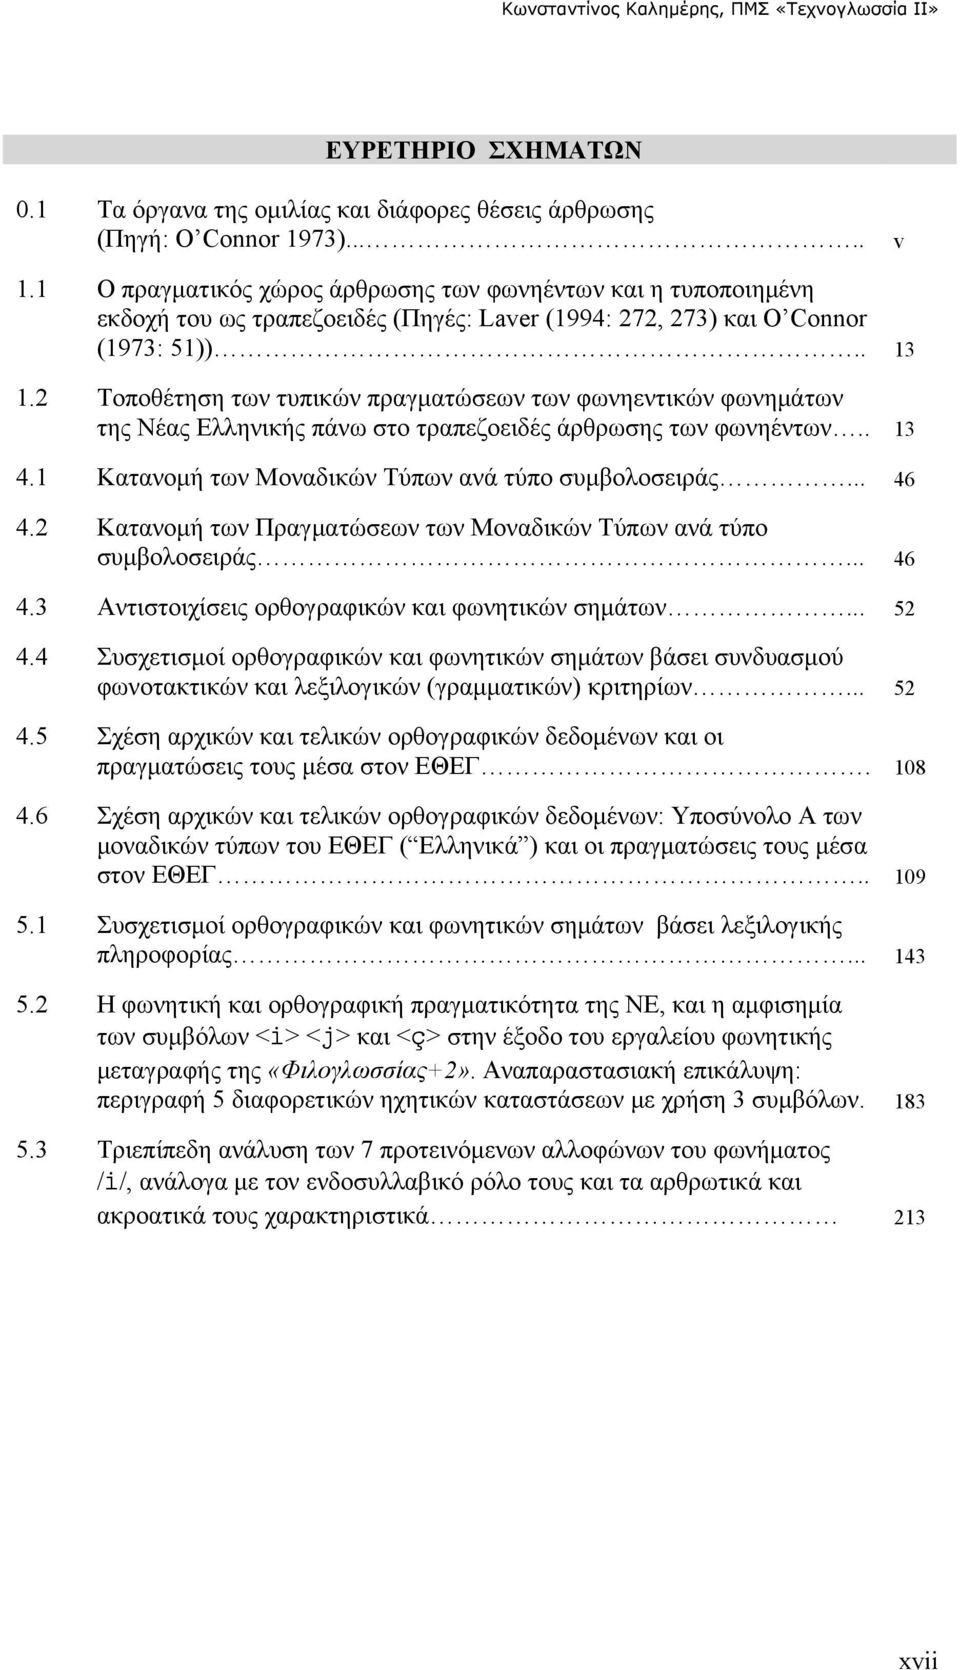 2 Τοποθέτηση των τυπικών πραγματώσεων των φωνηεντικών φωνημάτων της Νέας Ελληνικής πάνω στο τραπεζοειδές άρθρωσης των φωνηέντων.. 13 4.1 Κατανομή των Μοναδικών Τύπων ανά τύπο συμβολοσειράς... 46 4.